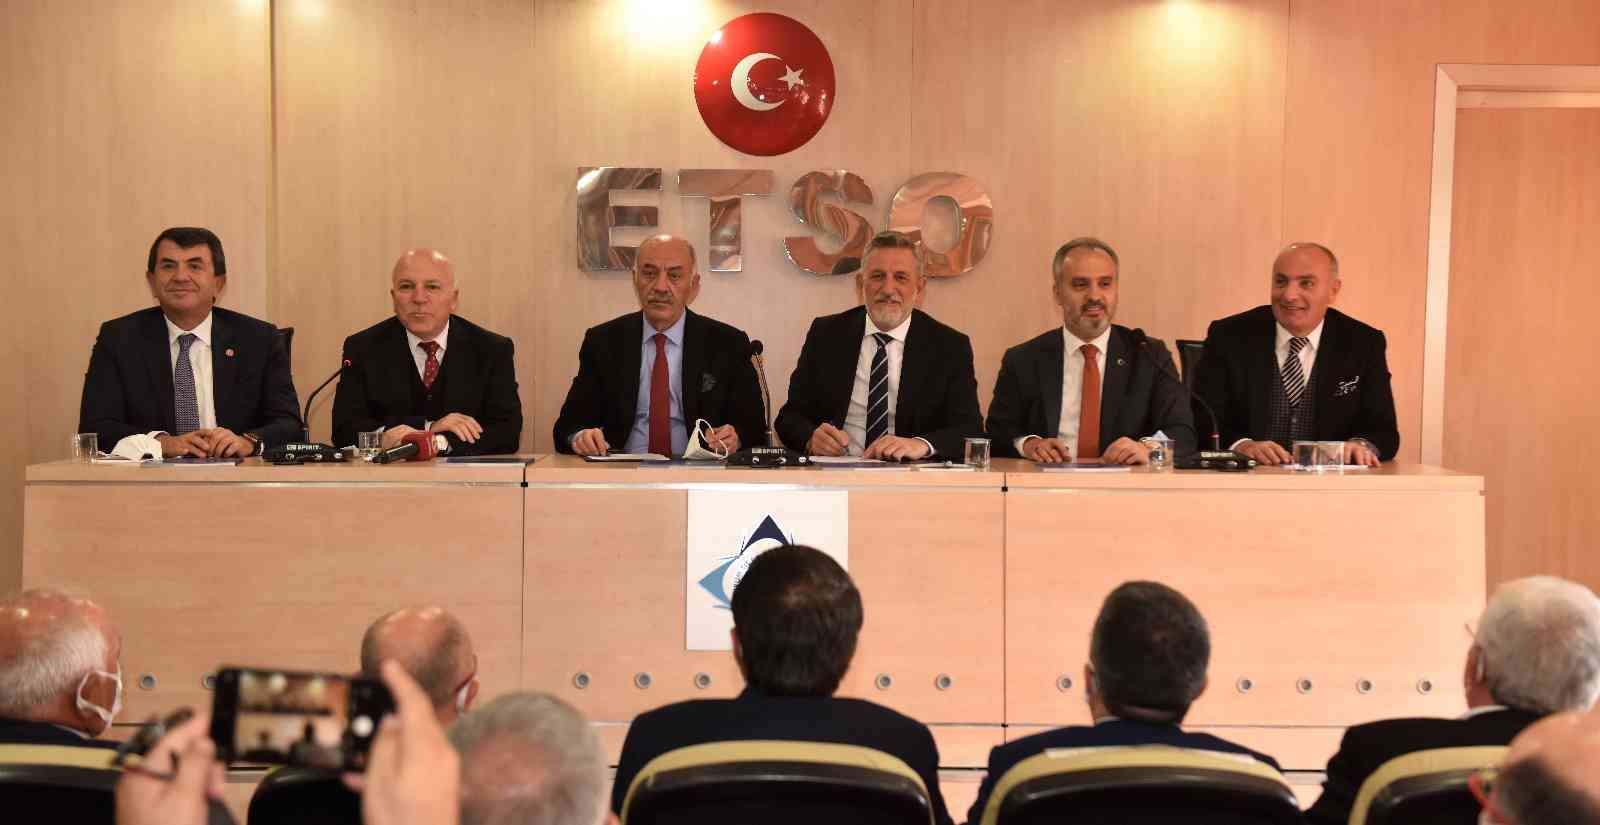 Bursa iş dünyası yeni yatırım hedefleri ve işbirliği için Erzurum’da #bursa